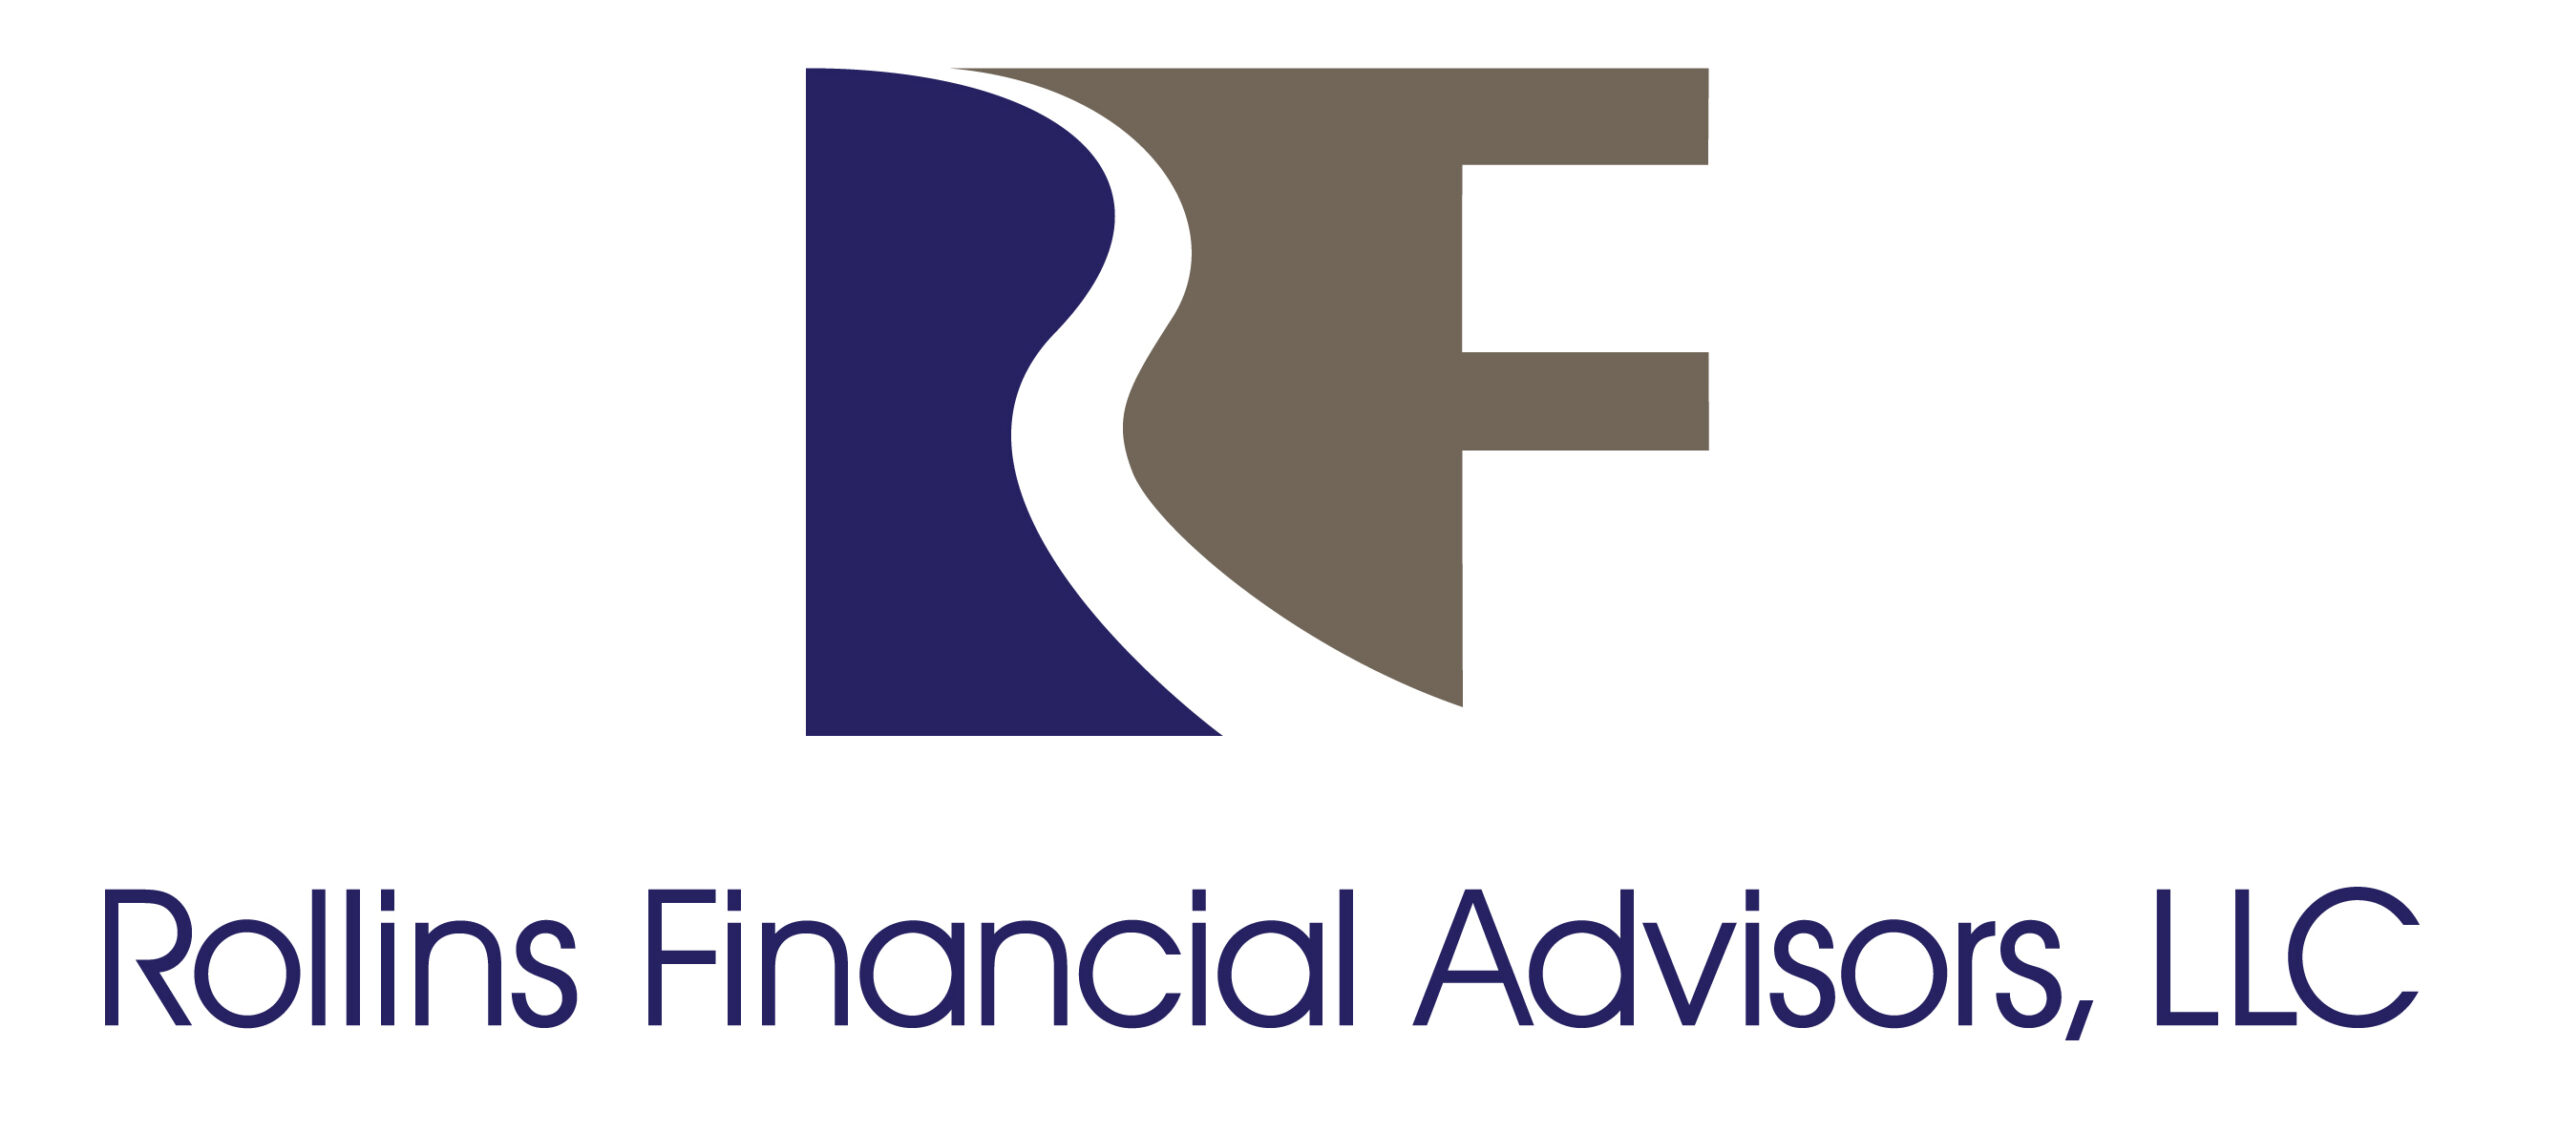 Rollins Financial Advisors, LLC